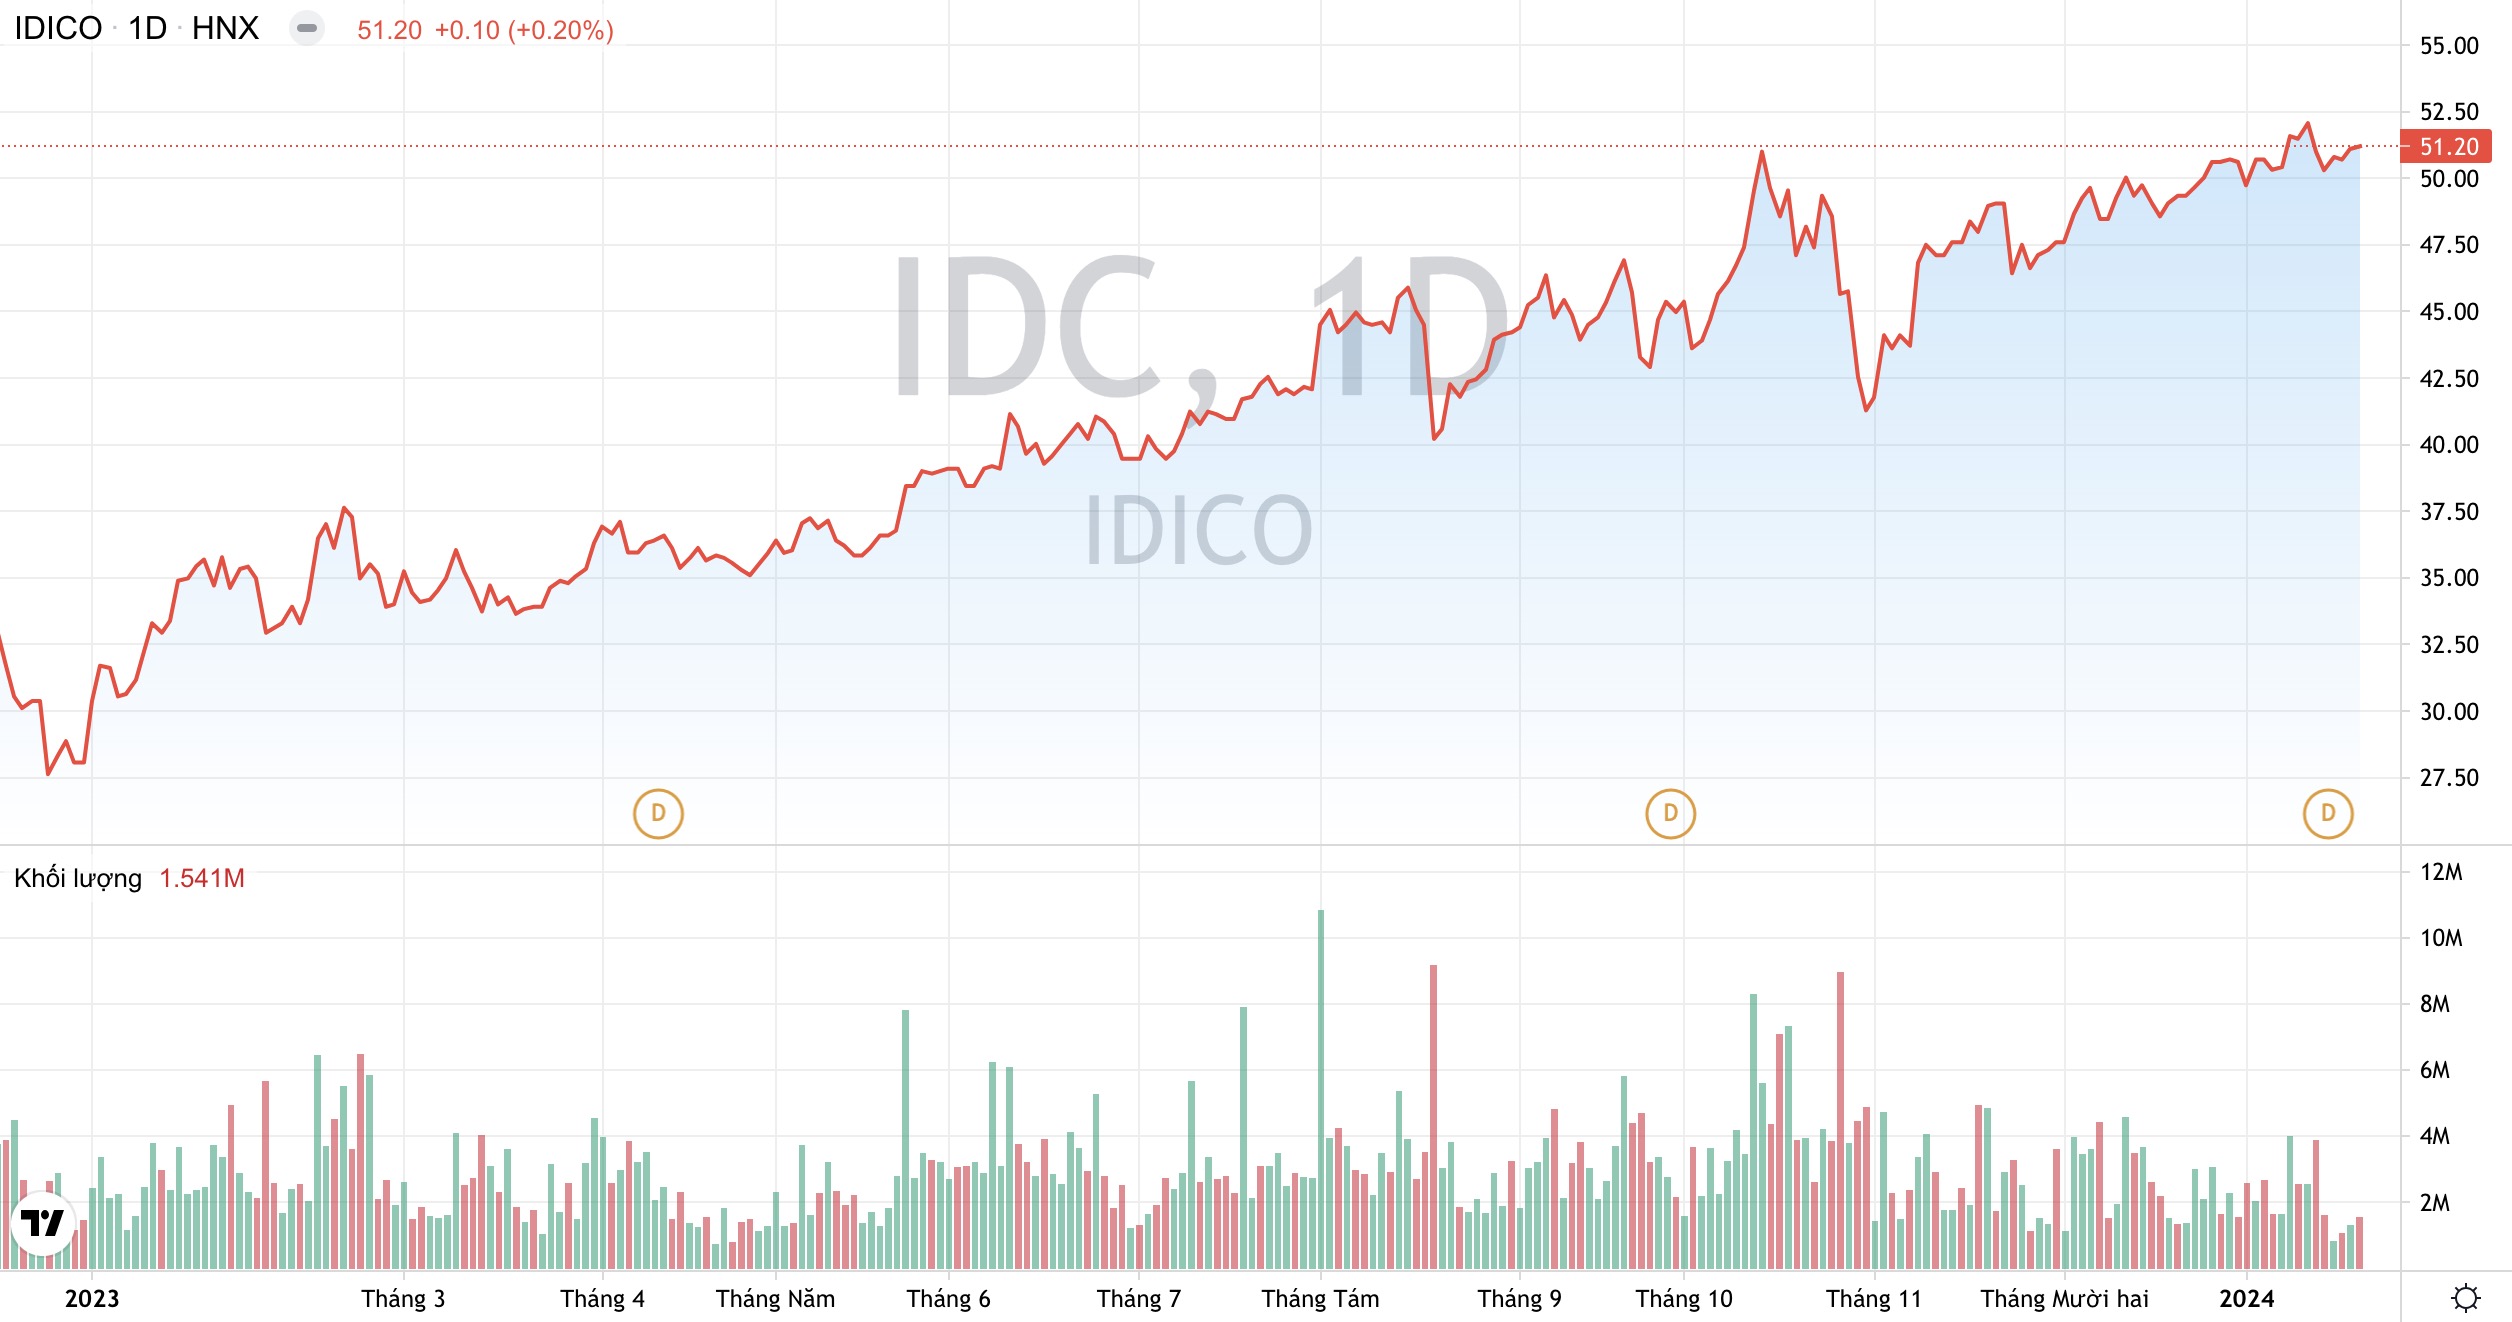 Tổng Công ty IDICO IDC rút khỏi dự án nhà xưởng quy mô 2.000 tỷ đồng 2